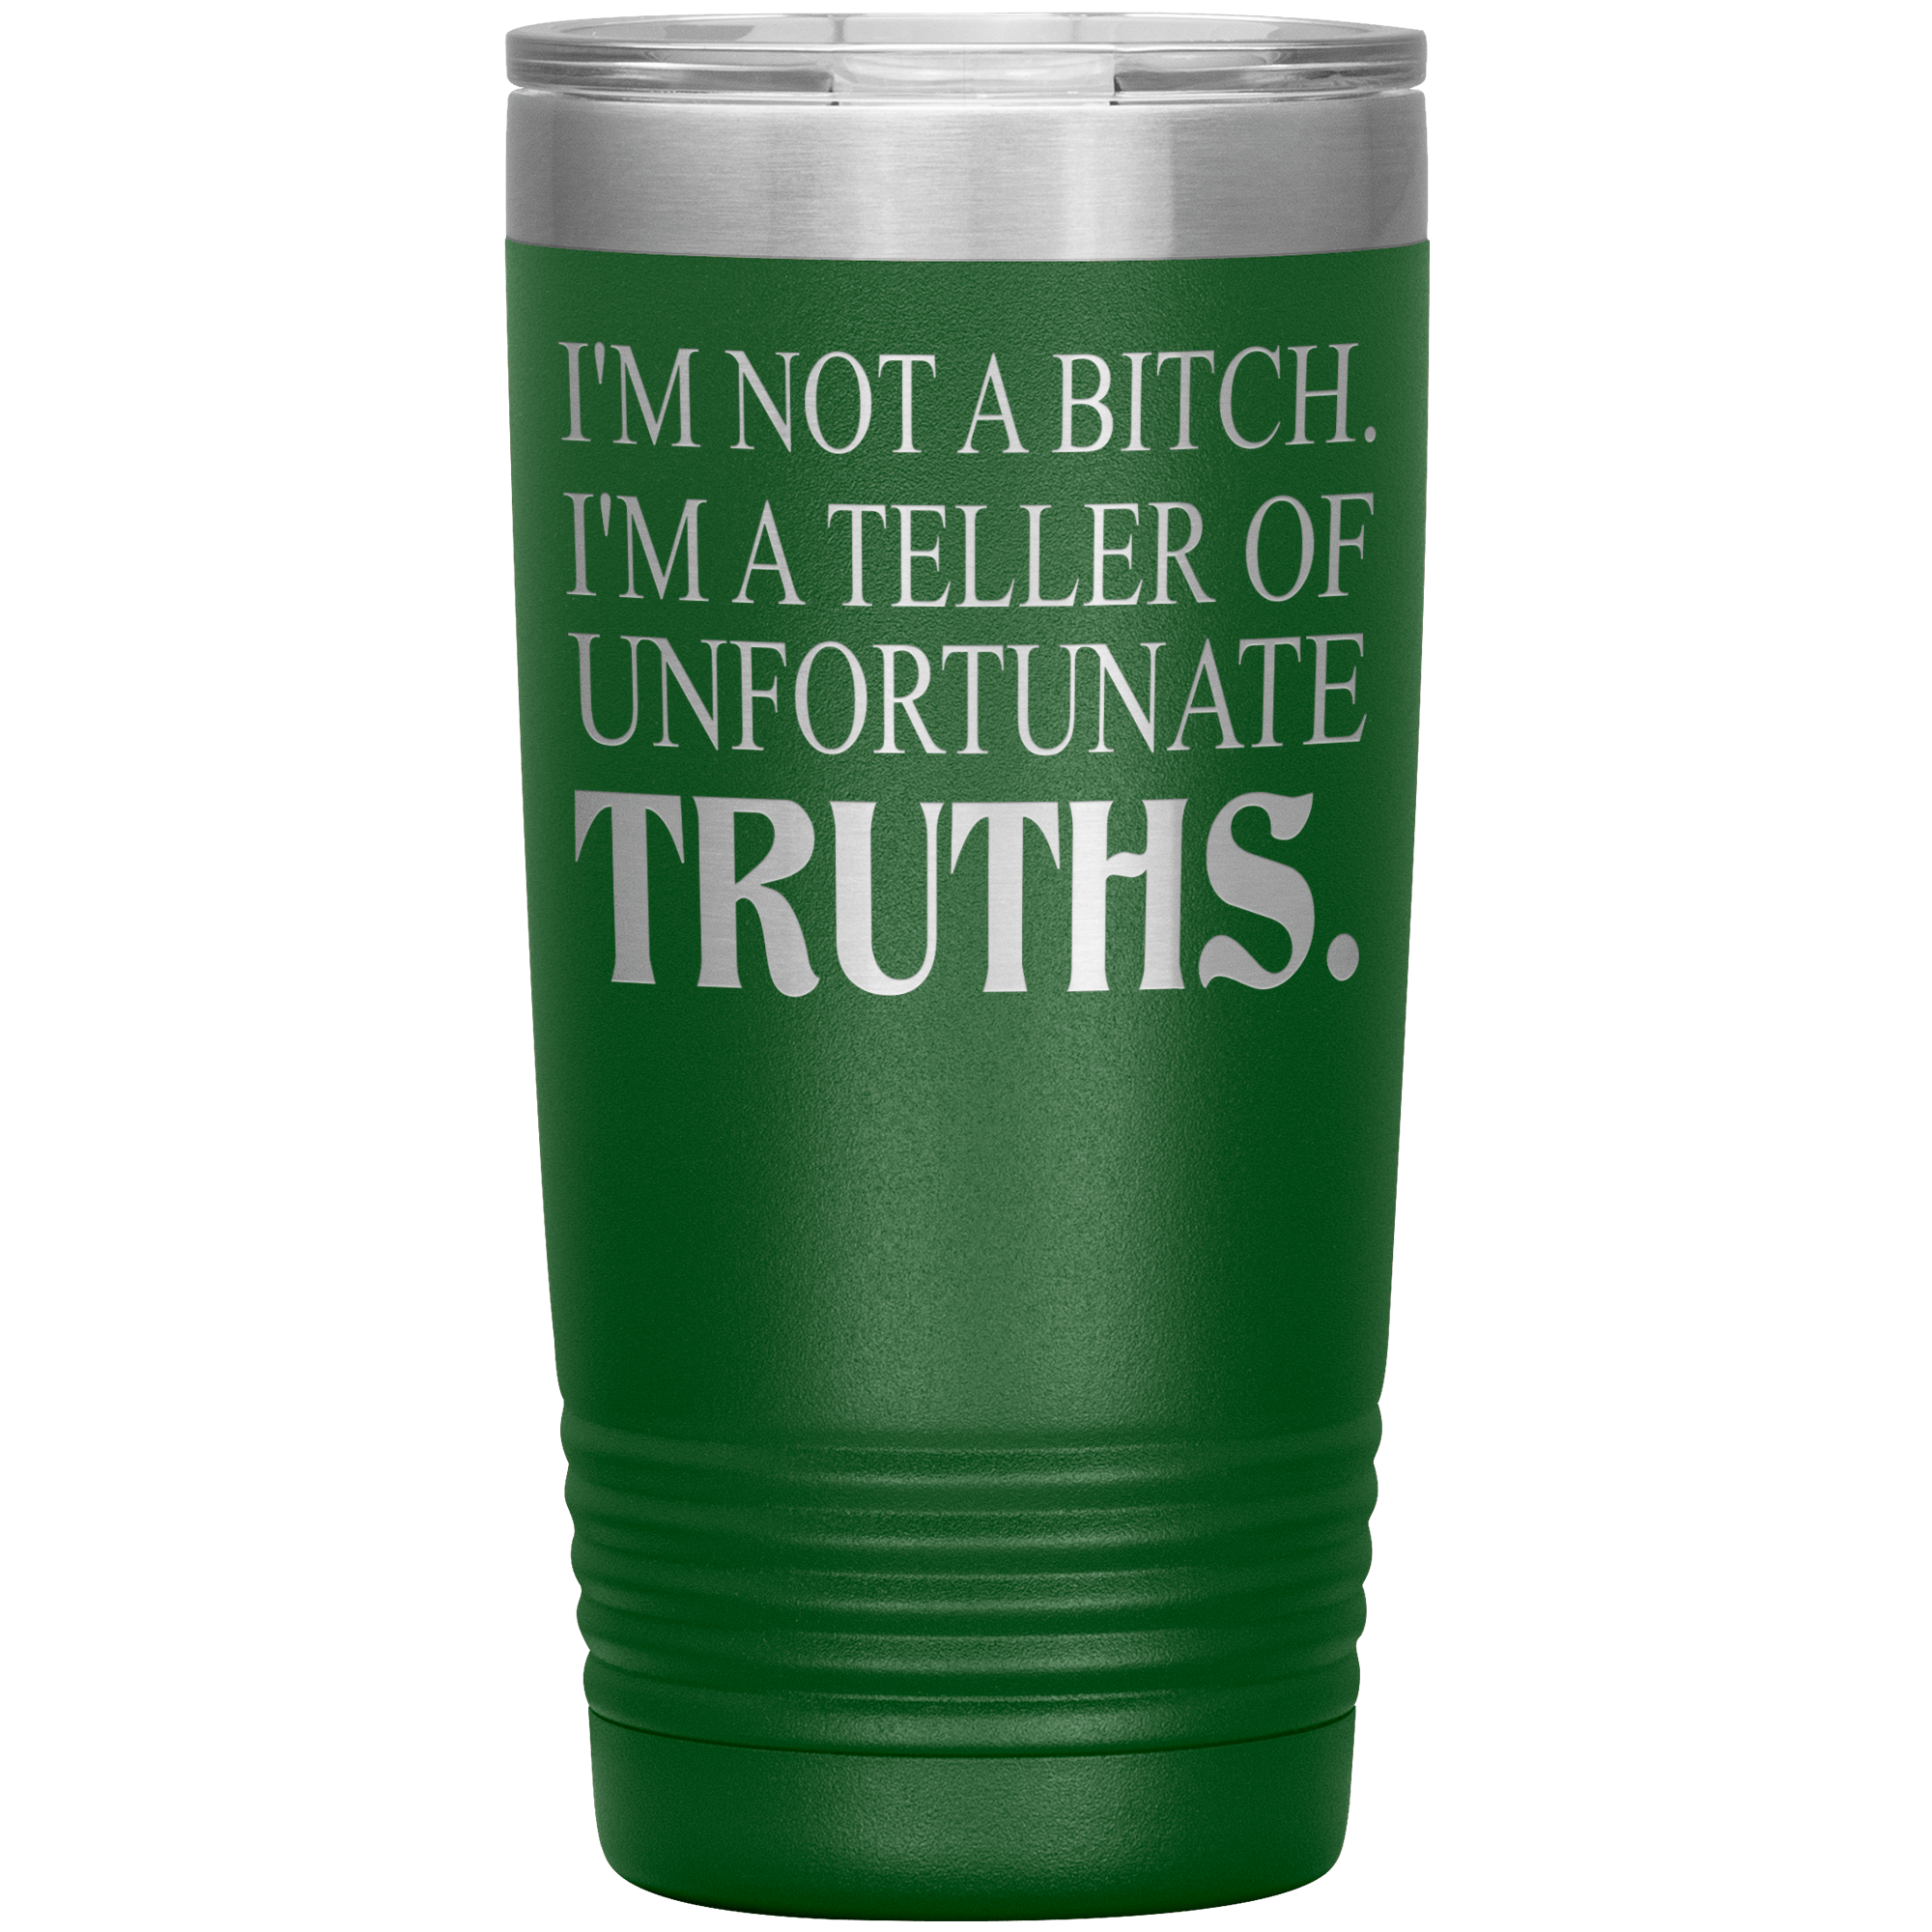 I 'M NOT BITCH I AM TELLER OF UNFORTUNATE TRUTHS " TUMBLER